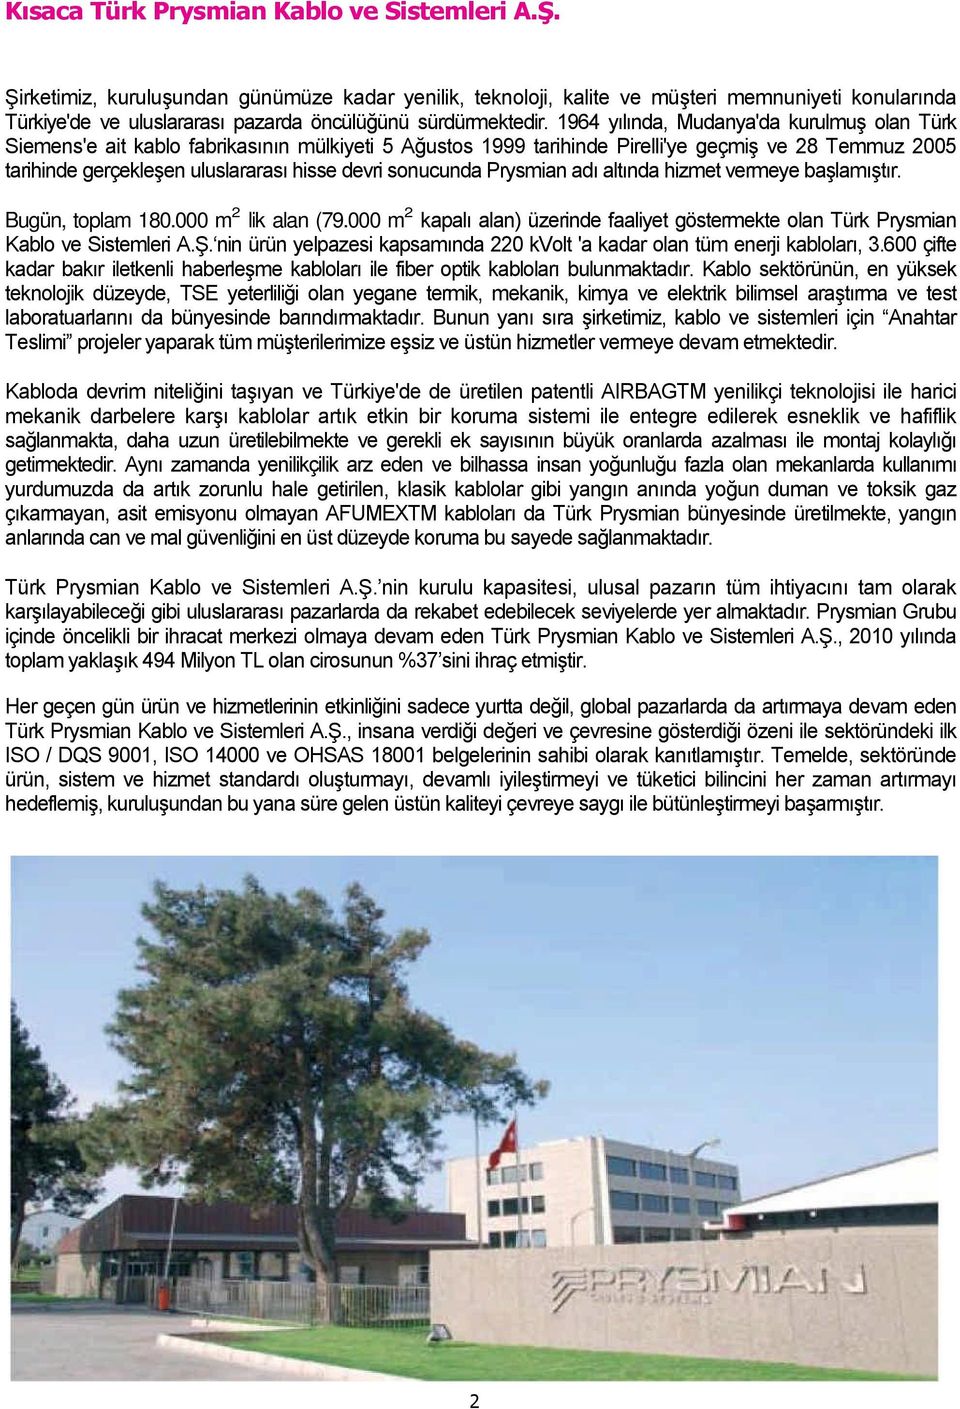 1964 yılında, Mudanya'da kurulmuş olan Türk Siemens'e ait kablo fabrikasının mülkiyeti 5 Ağustos 1999 tarihinde Pirelli'ye geçmiş ve 28 Temmuz 2005 tarihinde gerçekleşen uluslararası hisse devri